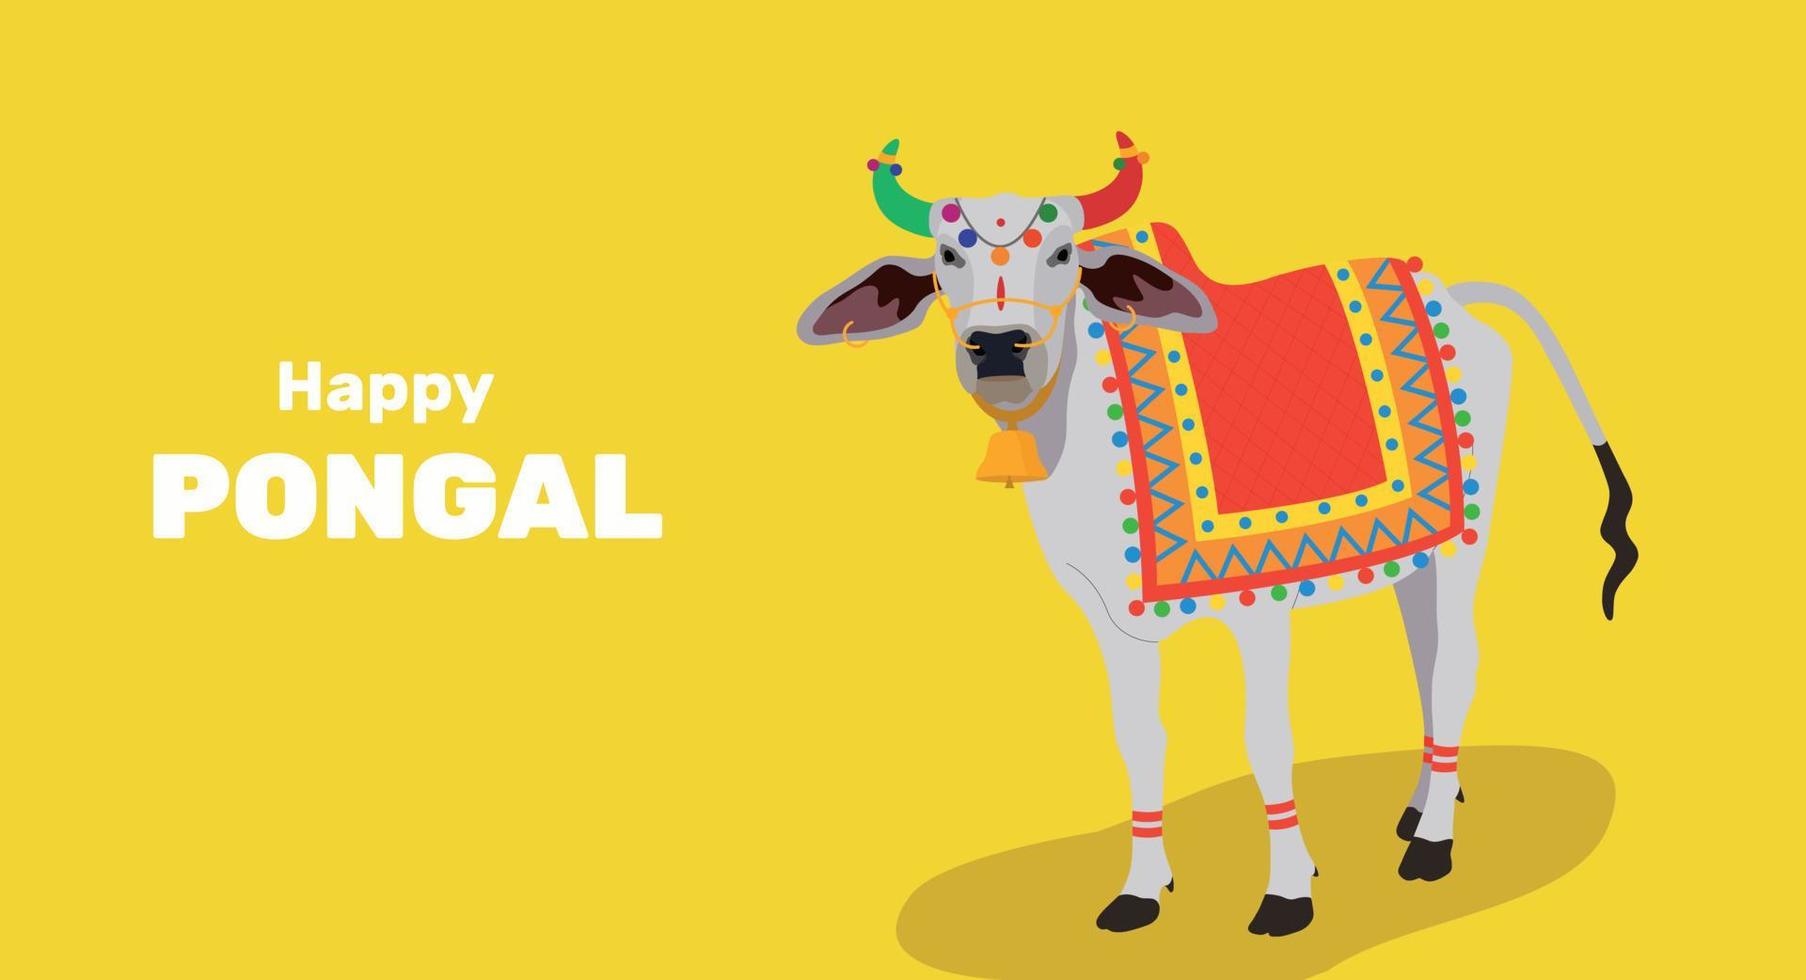 Fröhlicher religiöser Feiertag Pongal mit südindischem Feiertagshintergrund und fröhlichem Pongal. Vektor-Illustration. tamil nadu festival, südindien. heilige indische kuh. Büffel-Zebu vektor